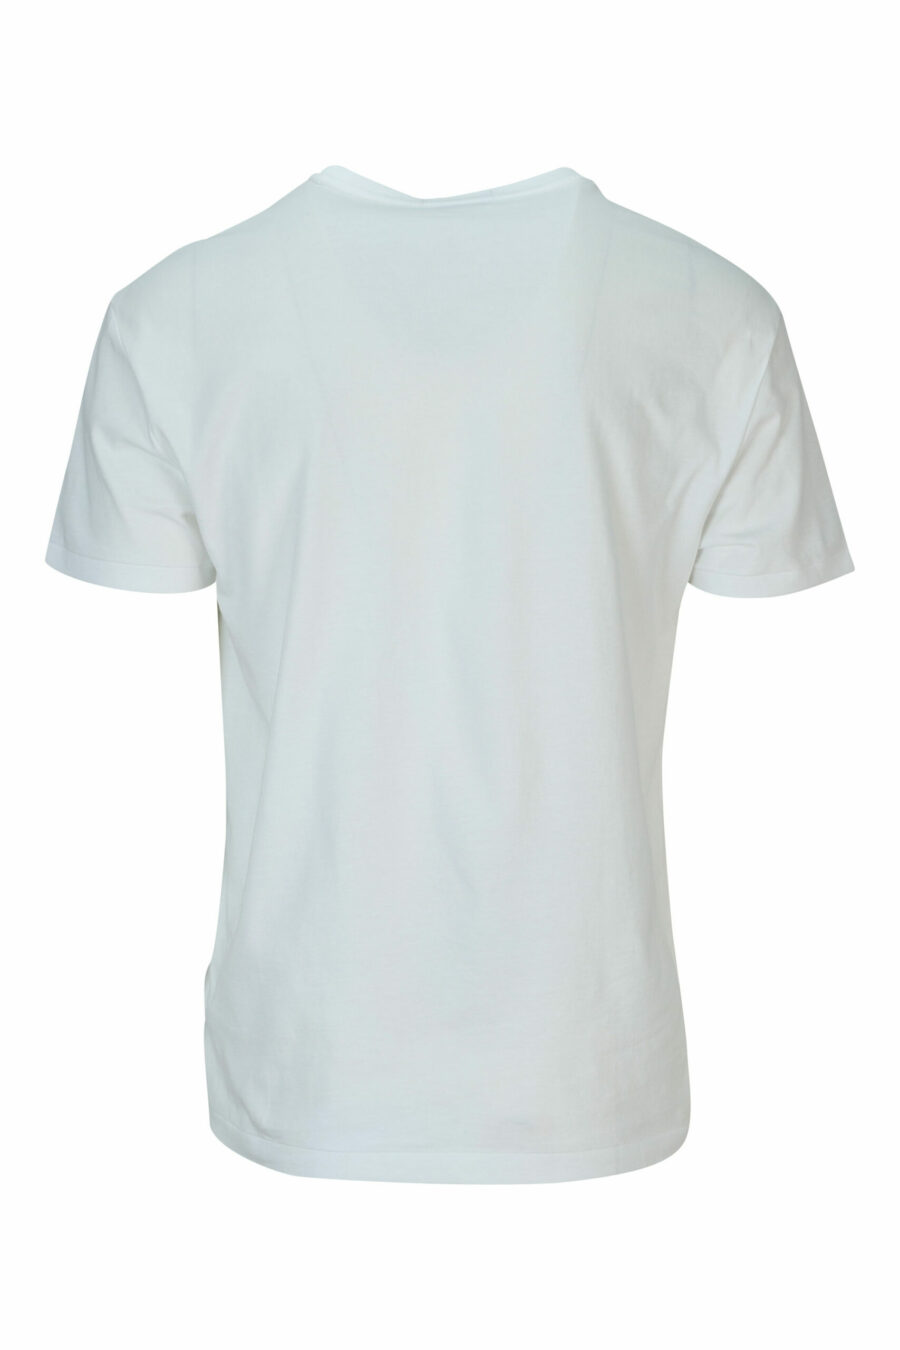 White T-shirt with black "polo" maxilogo - 3616536391115 1 scaled